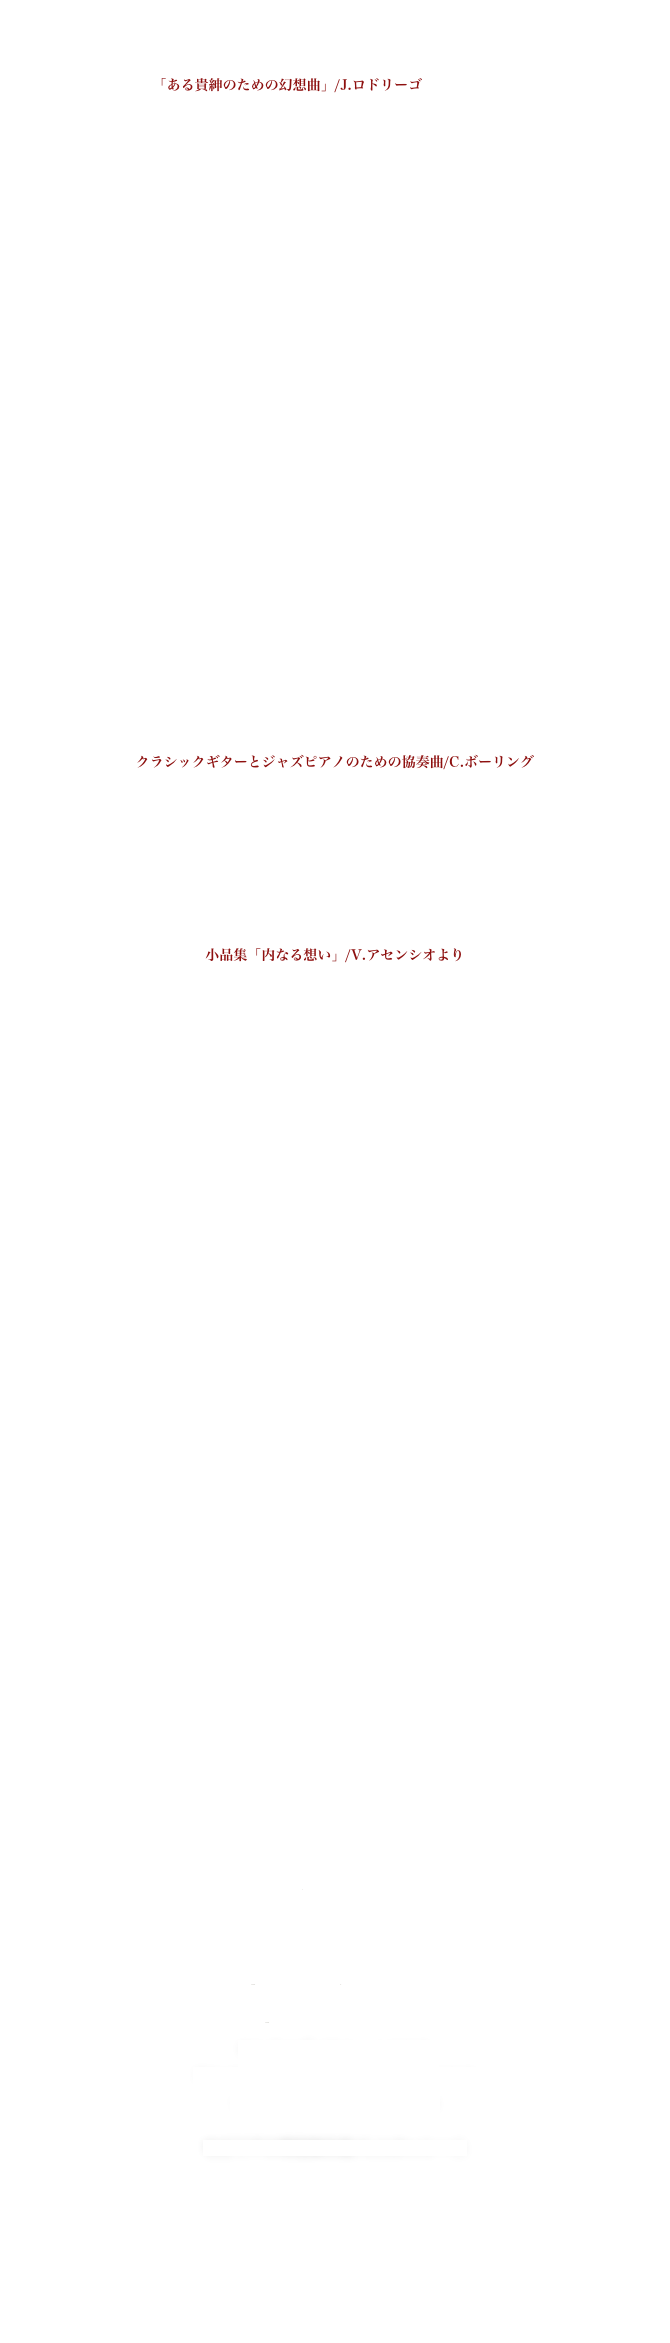 エストレリータ/M.M.ポンセ
タンゴアンスカイ/R.ディアンス　
「ある貴紳のための幻想曲」/J.ロドリーゴ　 1　2　3　4
「魔笛」による主題と変奏 Op.9/F.ソル
タンゴアンスカイ/R.ディアンス
序奏とファンダンゴ/L.ボッケリーニ
小組曲/S.バカリッセ
悪魔のカプリッチョ/テデスコ
バーデンジャズ組曲/J.イルマル
母の涙/J.ケイロス
ファンタジーディビジョンズ/S,ダッジソン
パヴァーナカプリッチョ/I.アルベニス
サラバンド/F.プーランク
アルハンブラの想い出/F.タレガ
アルハンブラの想い出2011/F.タレガ
ベニスの謝肉祭による変奏曲/F.タレガ
ライムライト/C.チャップリン
最後のトレモロ/a.バリオス
Beo Dat May Troi
ファンタジーディビジョンズ/S.ダッジソン
ワルツNo.4/A.バリオス
サンブラグラナディーナ/I.アルベニス
牝猫とならず者/カサノーバス　
クラシックギターとジャズピアノのための協奏曲/C.ボーリング
ヒスパニックダンス　　メキシケーヌ
インベンション　　アフリケーヌ
黄金のポリフェーモ/R.ブリンドル
アルフォンシーナと海/ラミレス
プレリュードNo.1/H.ヴィラ＝ロボス
小品集「内なる想い」/V.アセンシオより
宝物　　よろこび　　あこがれ
グランソロ／F.ソル
バーデンジャズ組曲2012 in チェコ
組曲アズール2012 in チェコ
アストゥリアス2012 in チェコ
アルハンブラの想い出 in チェコ
グランホタ／f.タレガ
ソナタ in D／M.アルベニス
サンブラ・グラナディーナ／サンブラ・グラナディーナ／I.アルベニス

スペイン舞曲第5番／E,グラナドス
モーツァルトの魔笛による変奏曲 Op.9／F.ソル

カプリス第24番／N.パガニーニ
タランテラ／M.カステルヌオヴォ＝テデスコ
悪魔のカプリチョ／M.カステルヌオヴォ＝テデスコ

最後のトレモロ／A.バリオス
コユンババ／C.ドメニコーニ

ギターとピアノのためのファンタジア／ハンス・ハウグ
イギリス組曲第４番第１、２楽章 第3、4楽章

Non ti scordar di me 忘れな草　山口邦明
Core'ngrato (Catari) カタリー　山口邦明

Bodel 1900 /A.Piazzola
Cafe 1930 / A.Piazzola
Night Club 1960 / A.Piazzola
Concert d’aujourd’hui / A.Piazzola

Antr’act / J.ibert
Paraboles / J. Ibert

Sonatine pour flute et guitare / E.Marchelie

Sianatina Op.205 / M.Castelnuovo=Tedesco

セレナーデ / F.シューベルト
アルペジョーネ・ソナタ / F.シューベルト
ソナタ・イ短調 / G.F.ヘンデル

セビリアの理髪師序曲/G.A.ロッシーニ